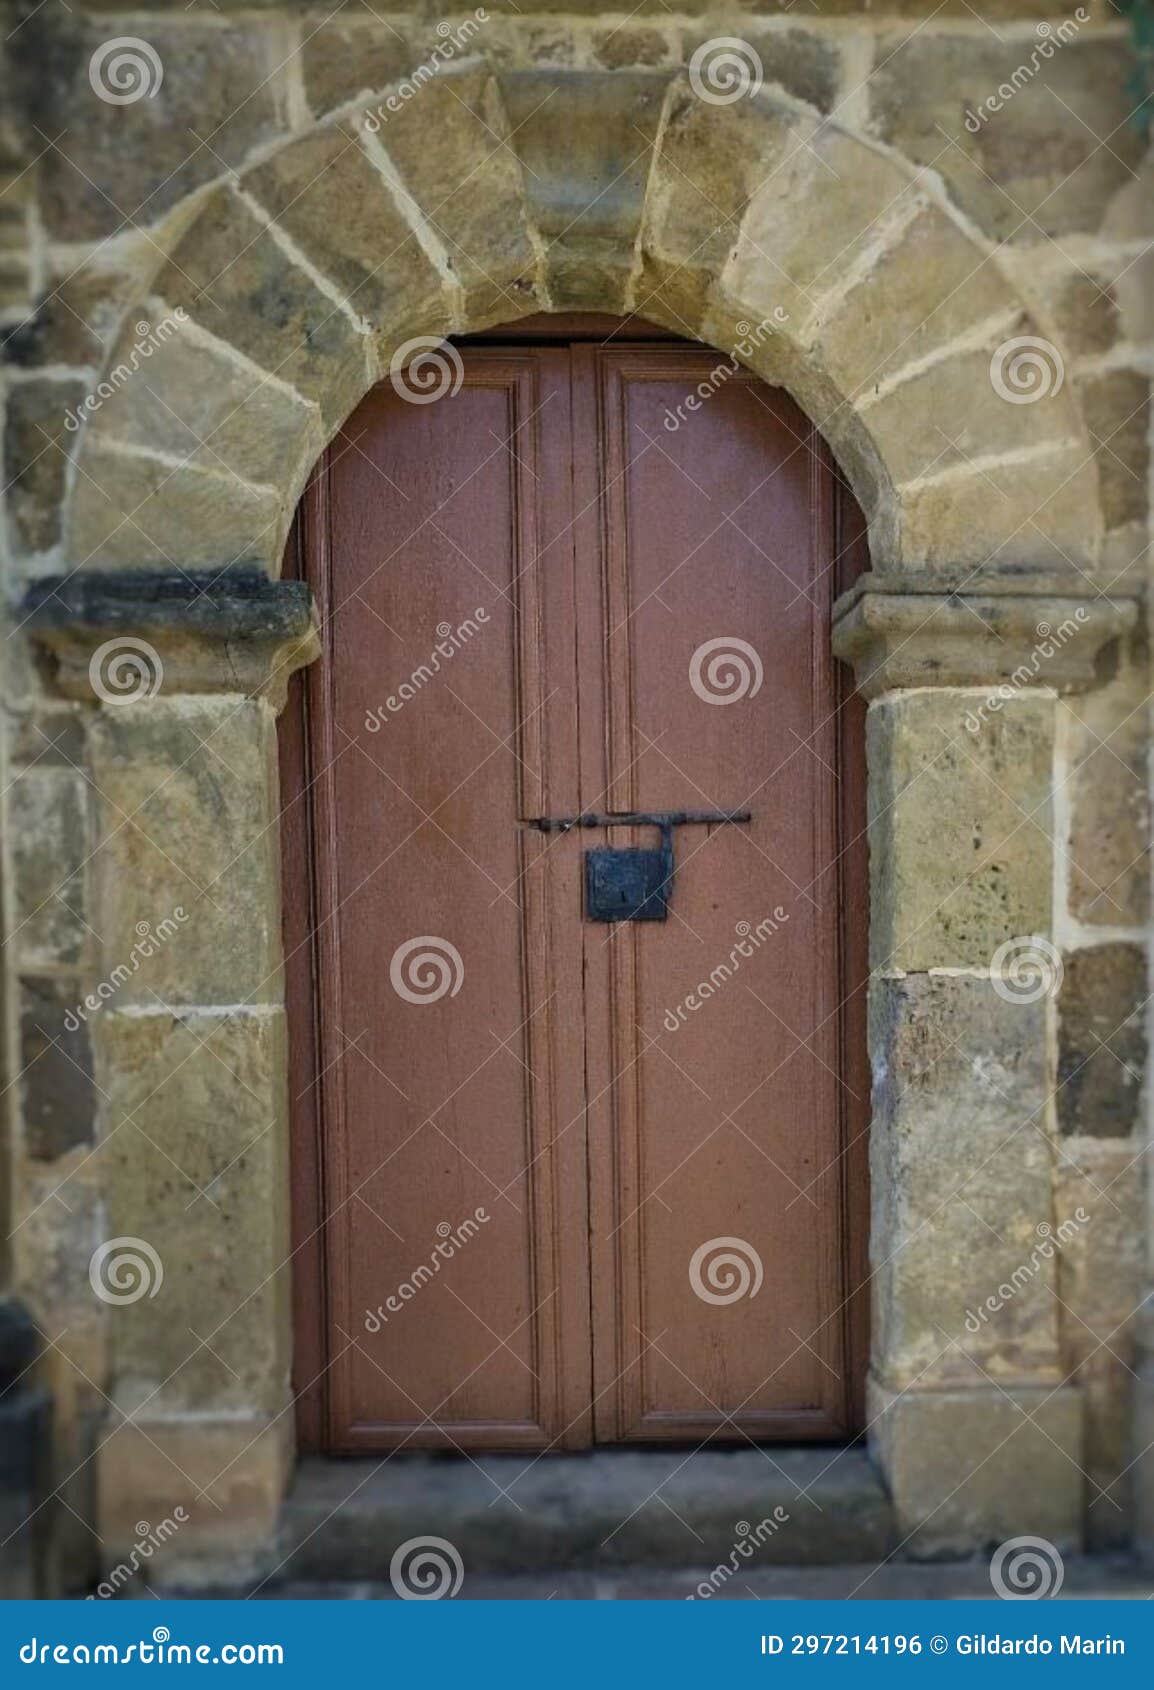 arco en piedra con puerta en madera.